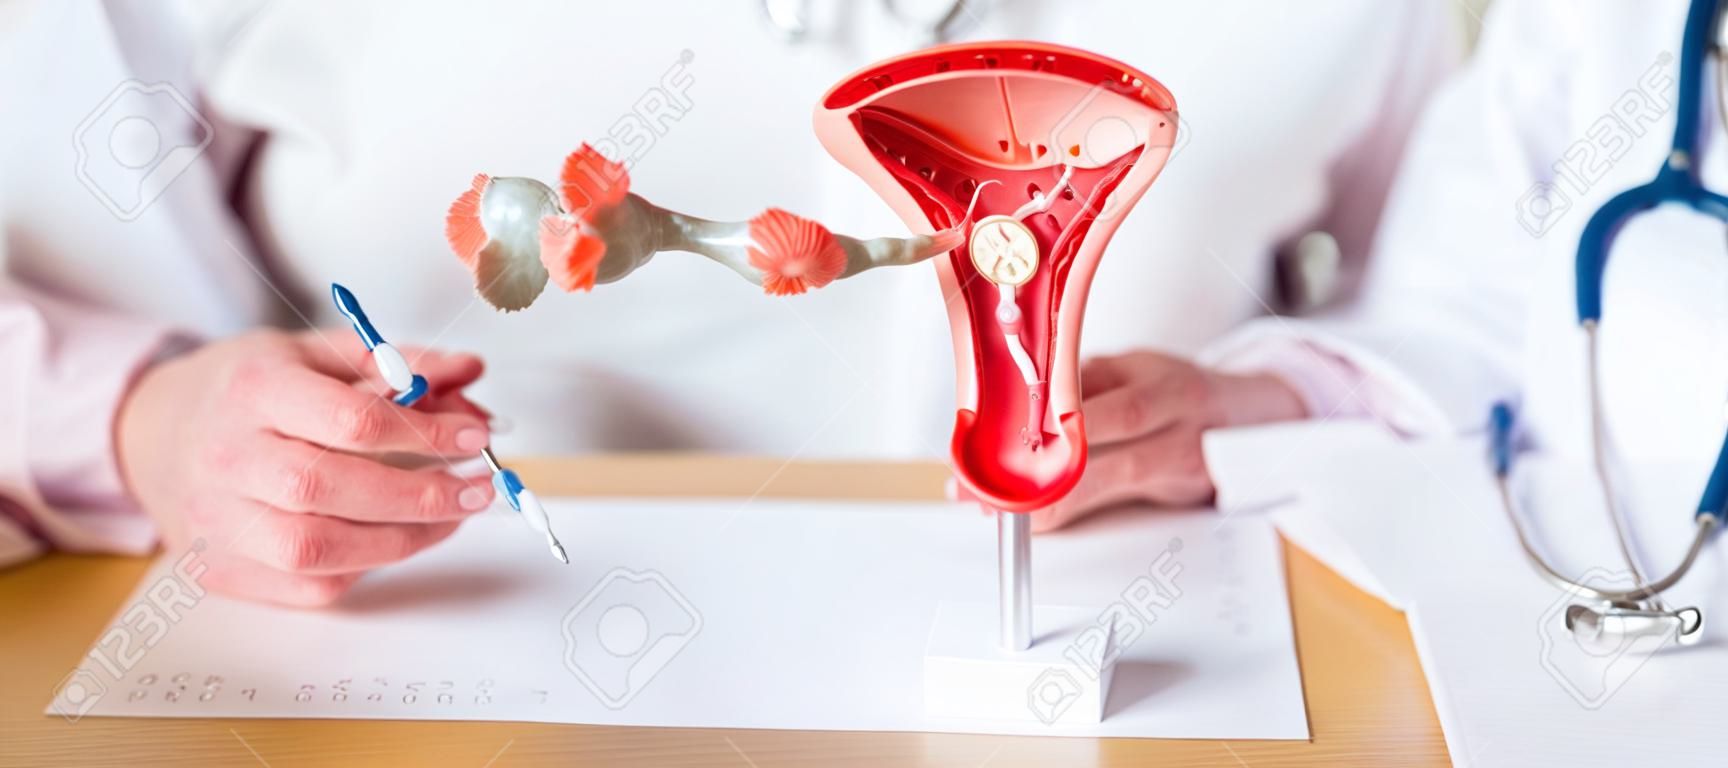 Médico con útero y ovarios modelo de anatomía cáncer de ovario y cuello uterino trastorno del cuello uterino endometriosis histerectomía fibromas uterinos sistema reproductivo embarazo y concepto de salud